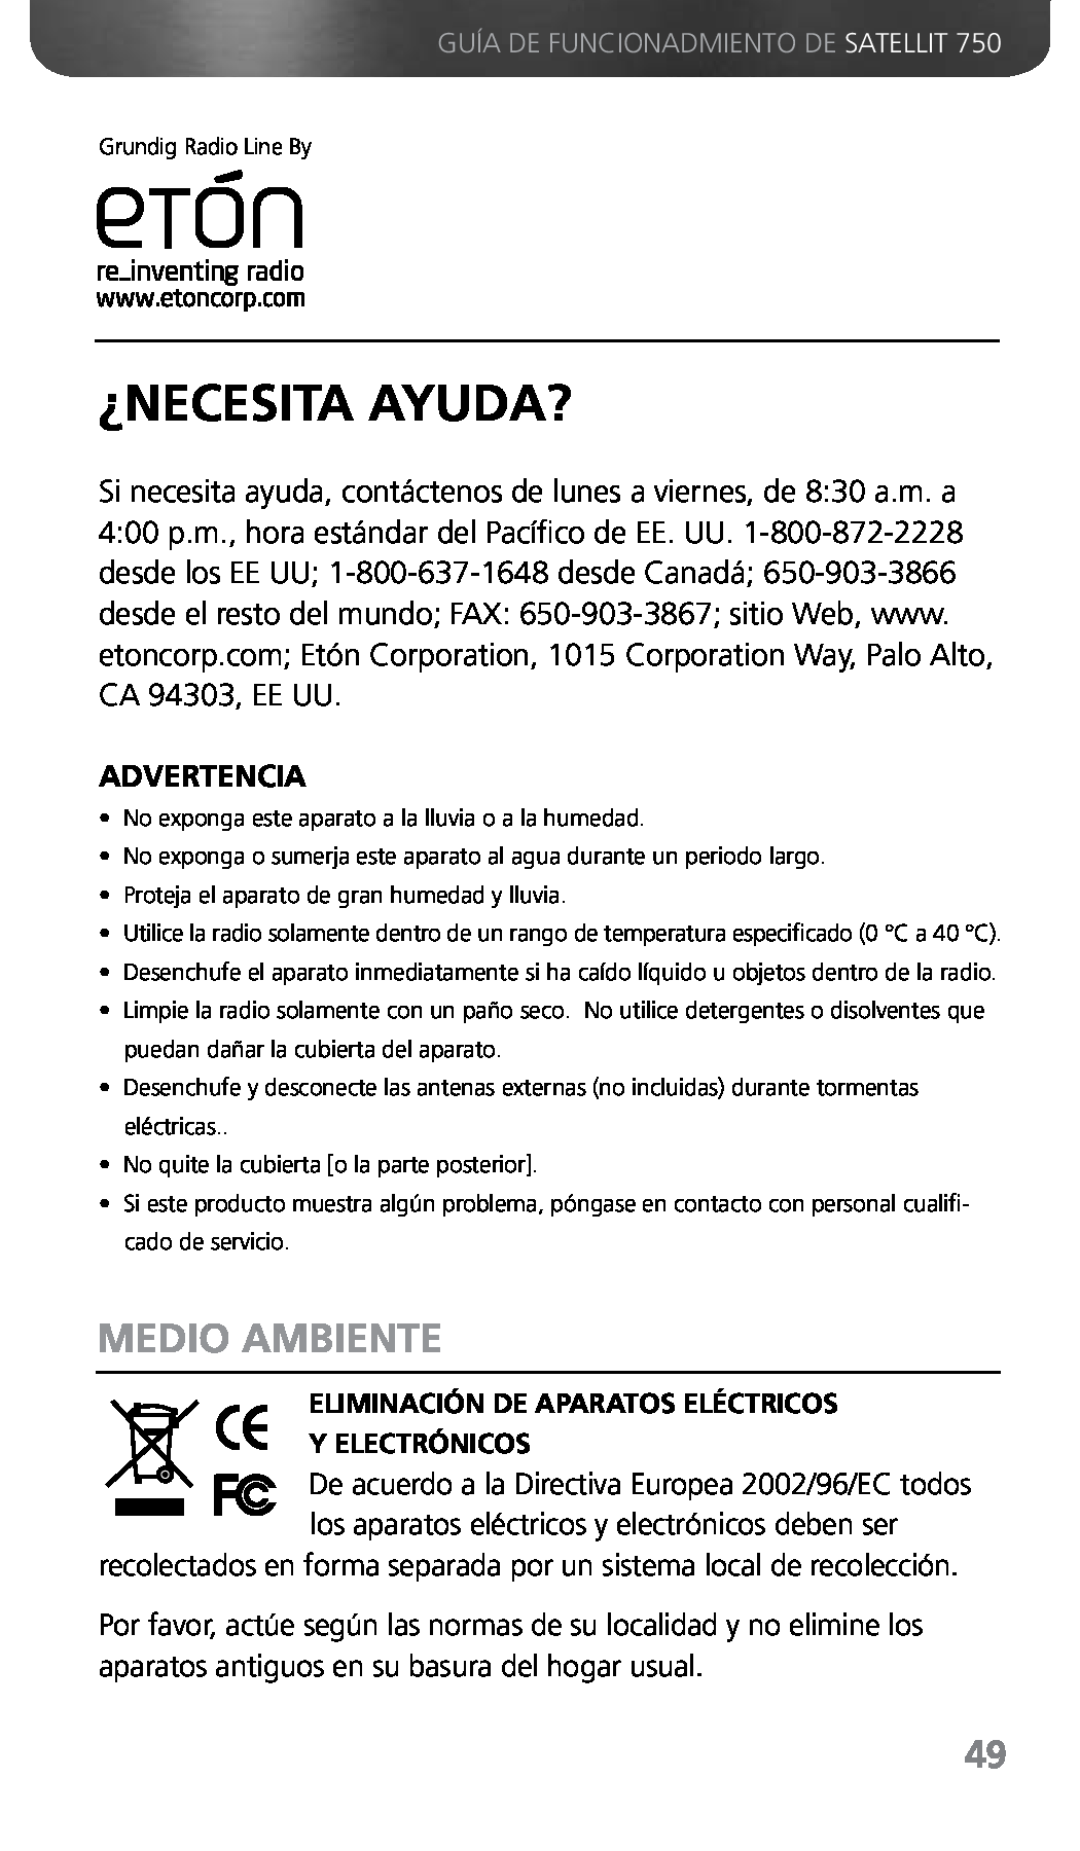 Grundig 750 owner manual ¿Necesita Ayuda?, Medio ambiente, Advertencia, Eliminación De Aparatos Eléctricos Y Electrónicos 